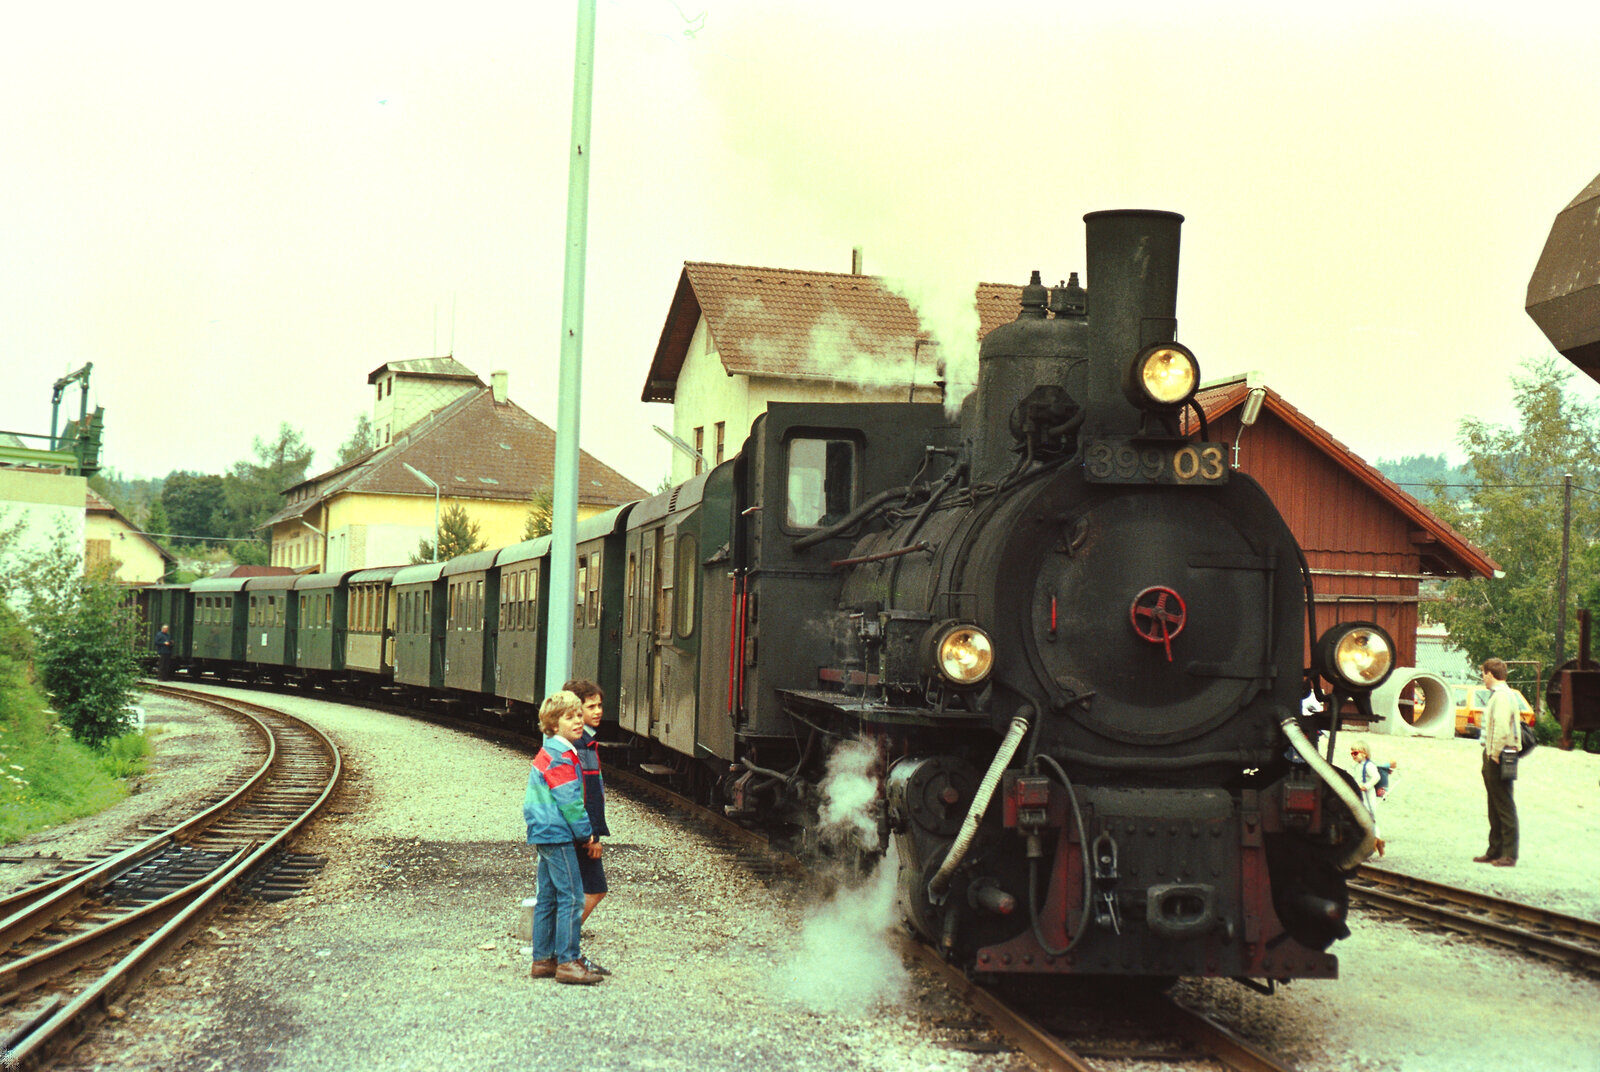 Waldviertelbahn, Groß-Gerungs.
Datum: 20.08.1984